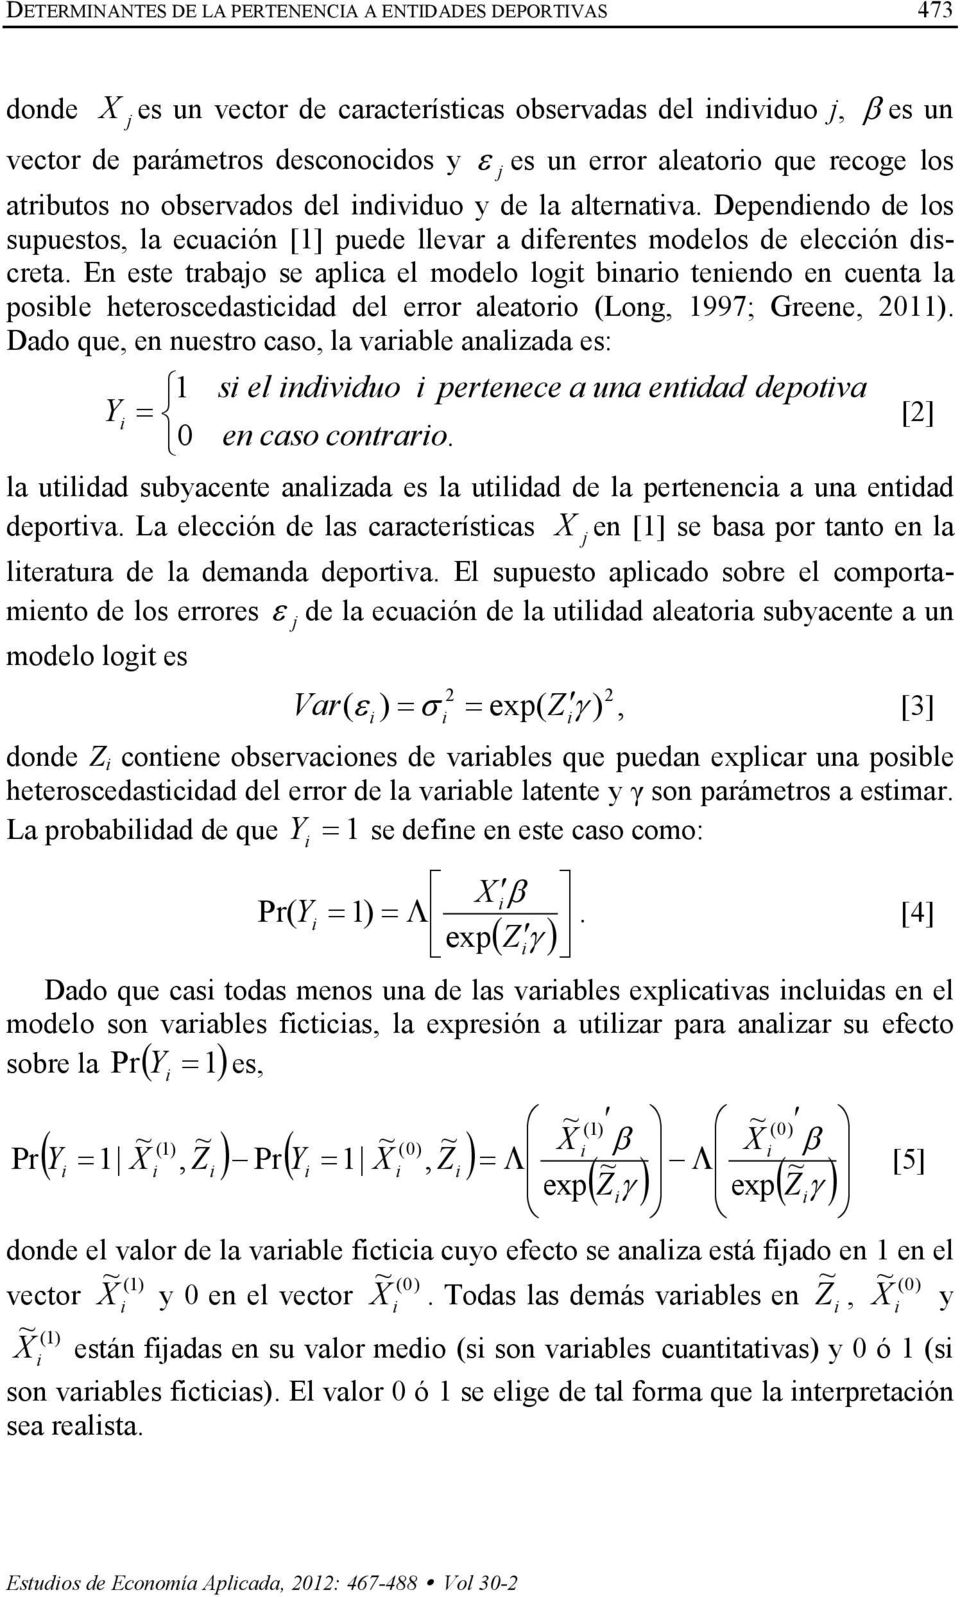 En este trabajo se aplca el modelo logt bnaro tenendo en cuenta la posble heteroscedastcdad del error aleatoro (Long, 1997; Greene, 2011).